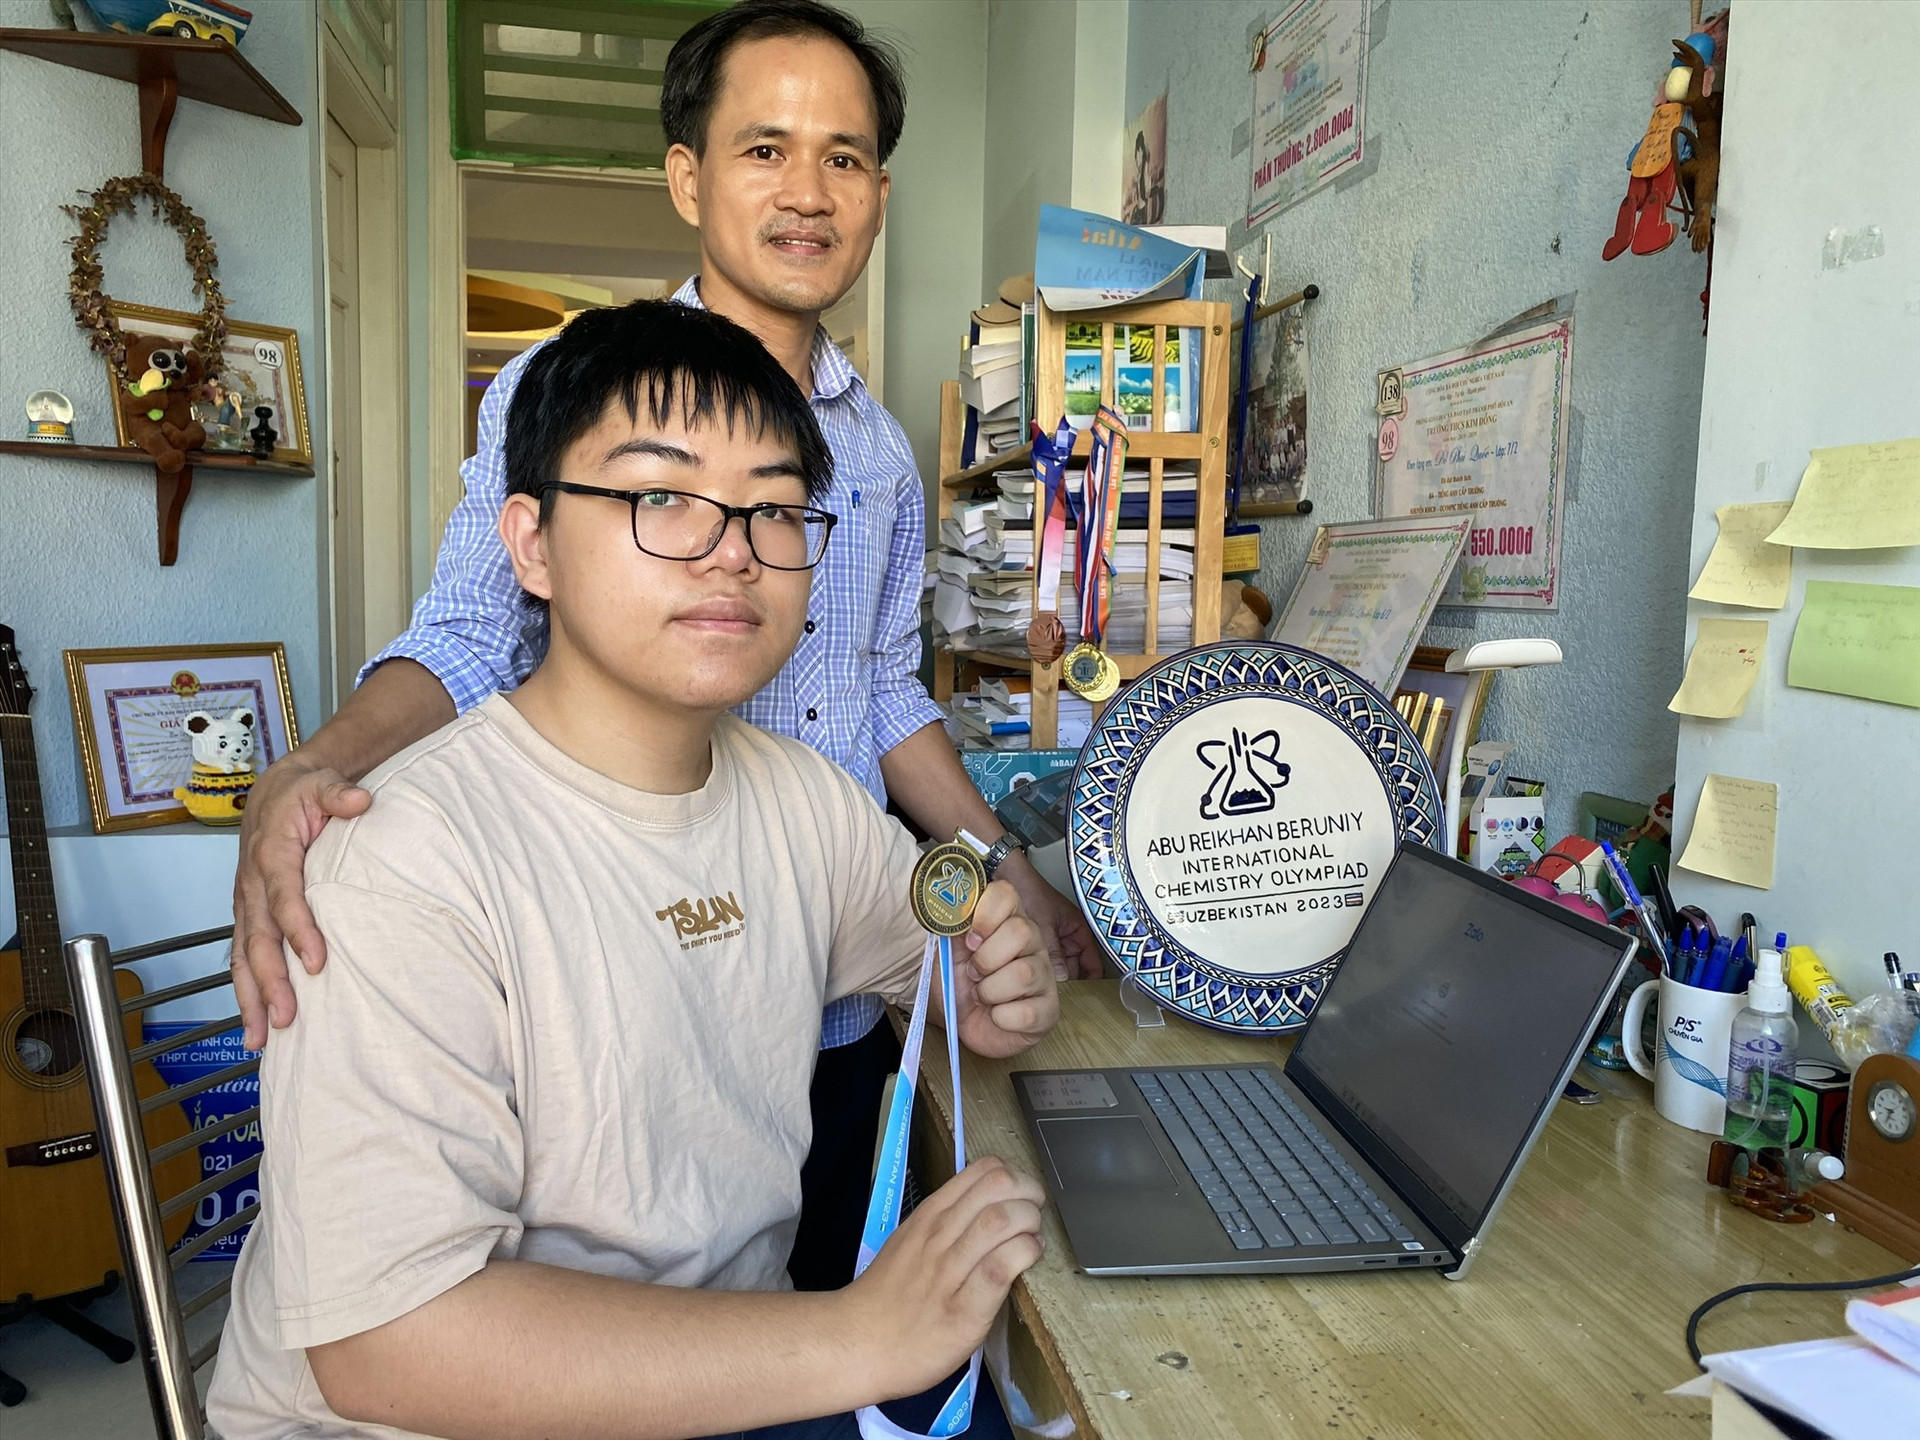 Em Đỗ Phú Quốc chụp ảnh cùng cha sau khi trở về nhà từ Kỳ thi Olympic Hóa học quốc tế Abu Reikhan Beruniy. Ảnh: K.L.